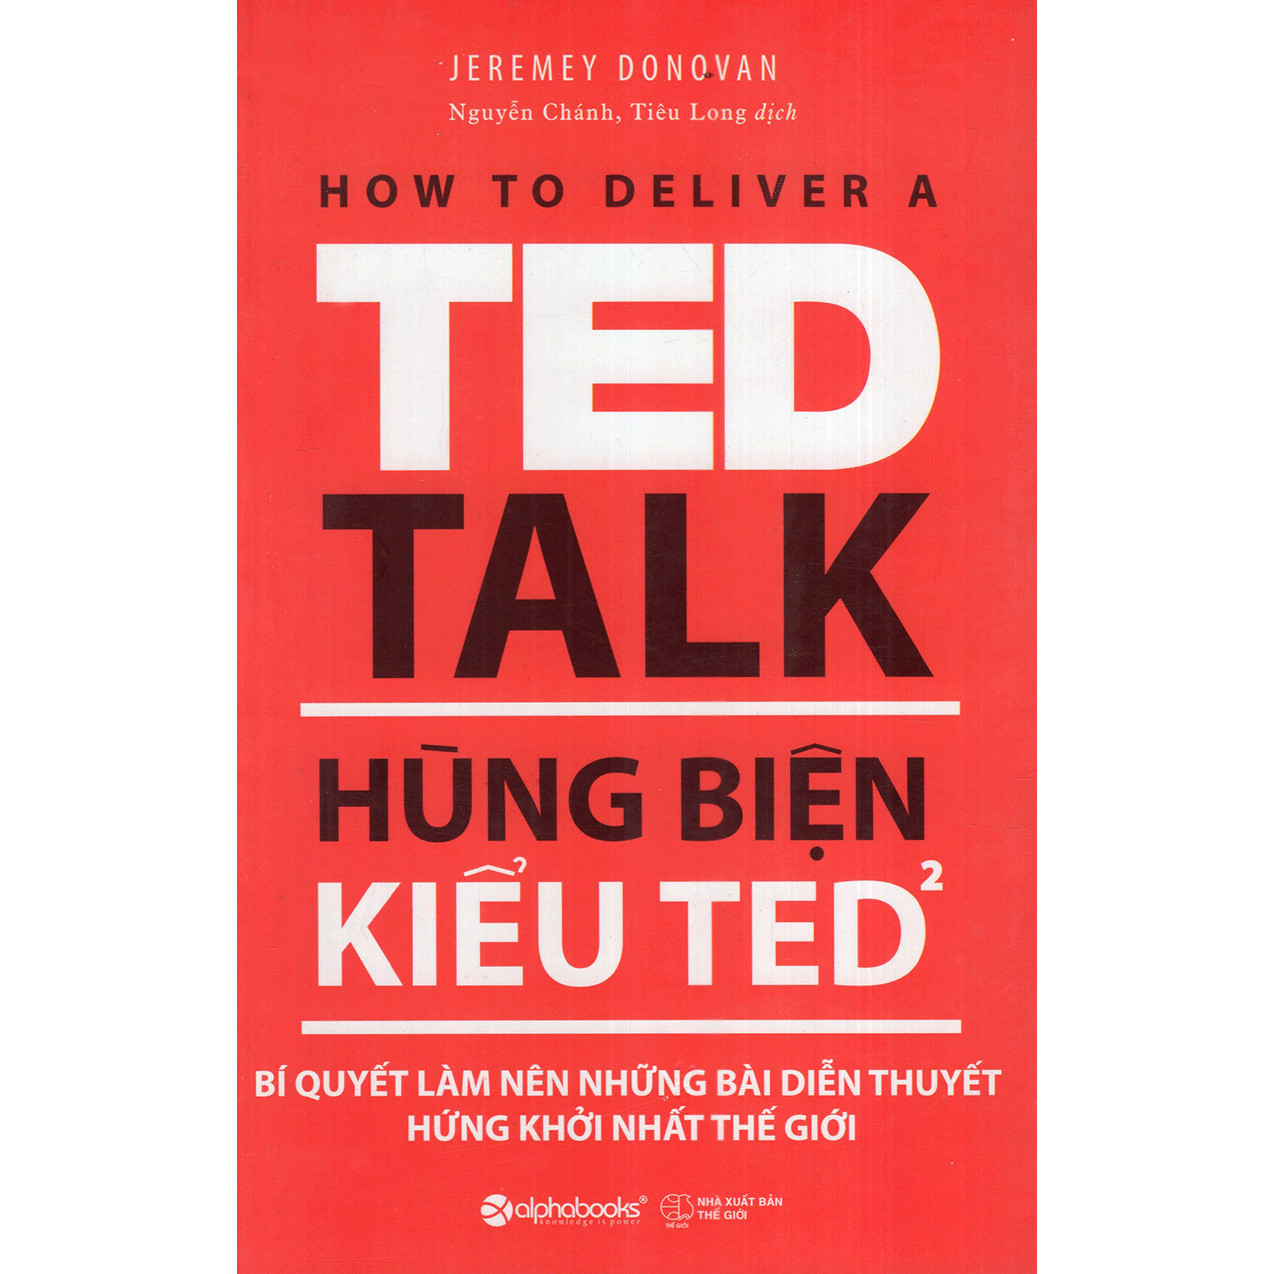 Hùng Biện Kiểu Ted 2 - Bí Quyết Làm Nên Những Bài Diễn Thuyết Hứng Khởi Nhất Thế Giới (Tái Bản) (Tặng Cây Viết Galaxy)